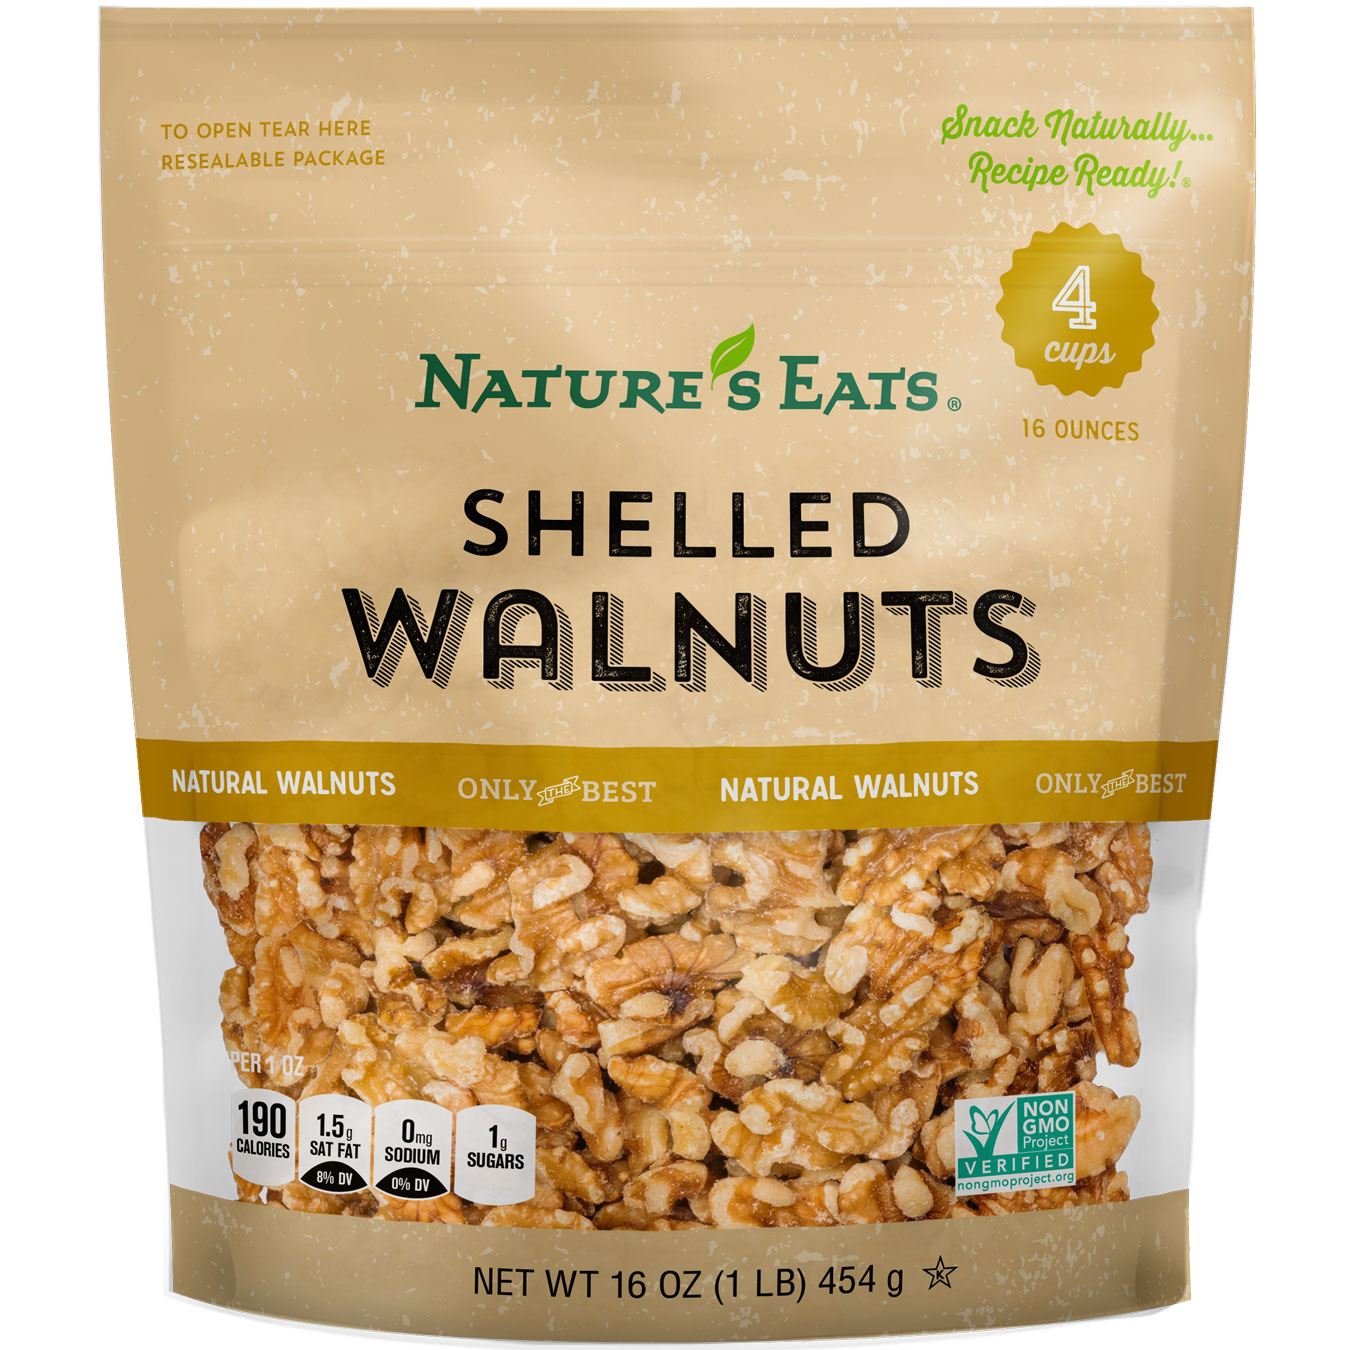 shelled-walnuts-neb-16oz.jpg